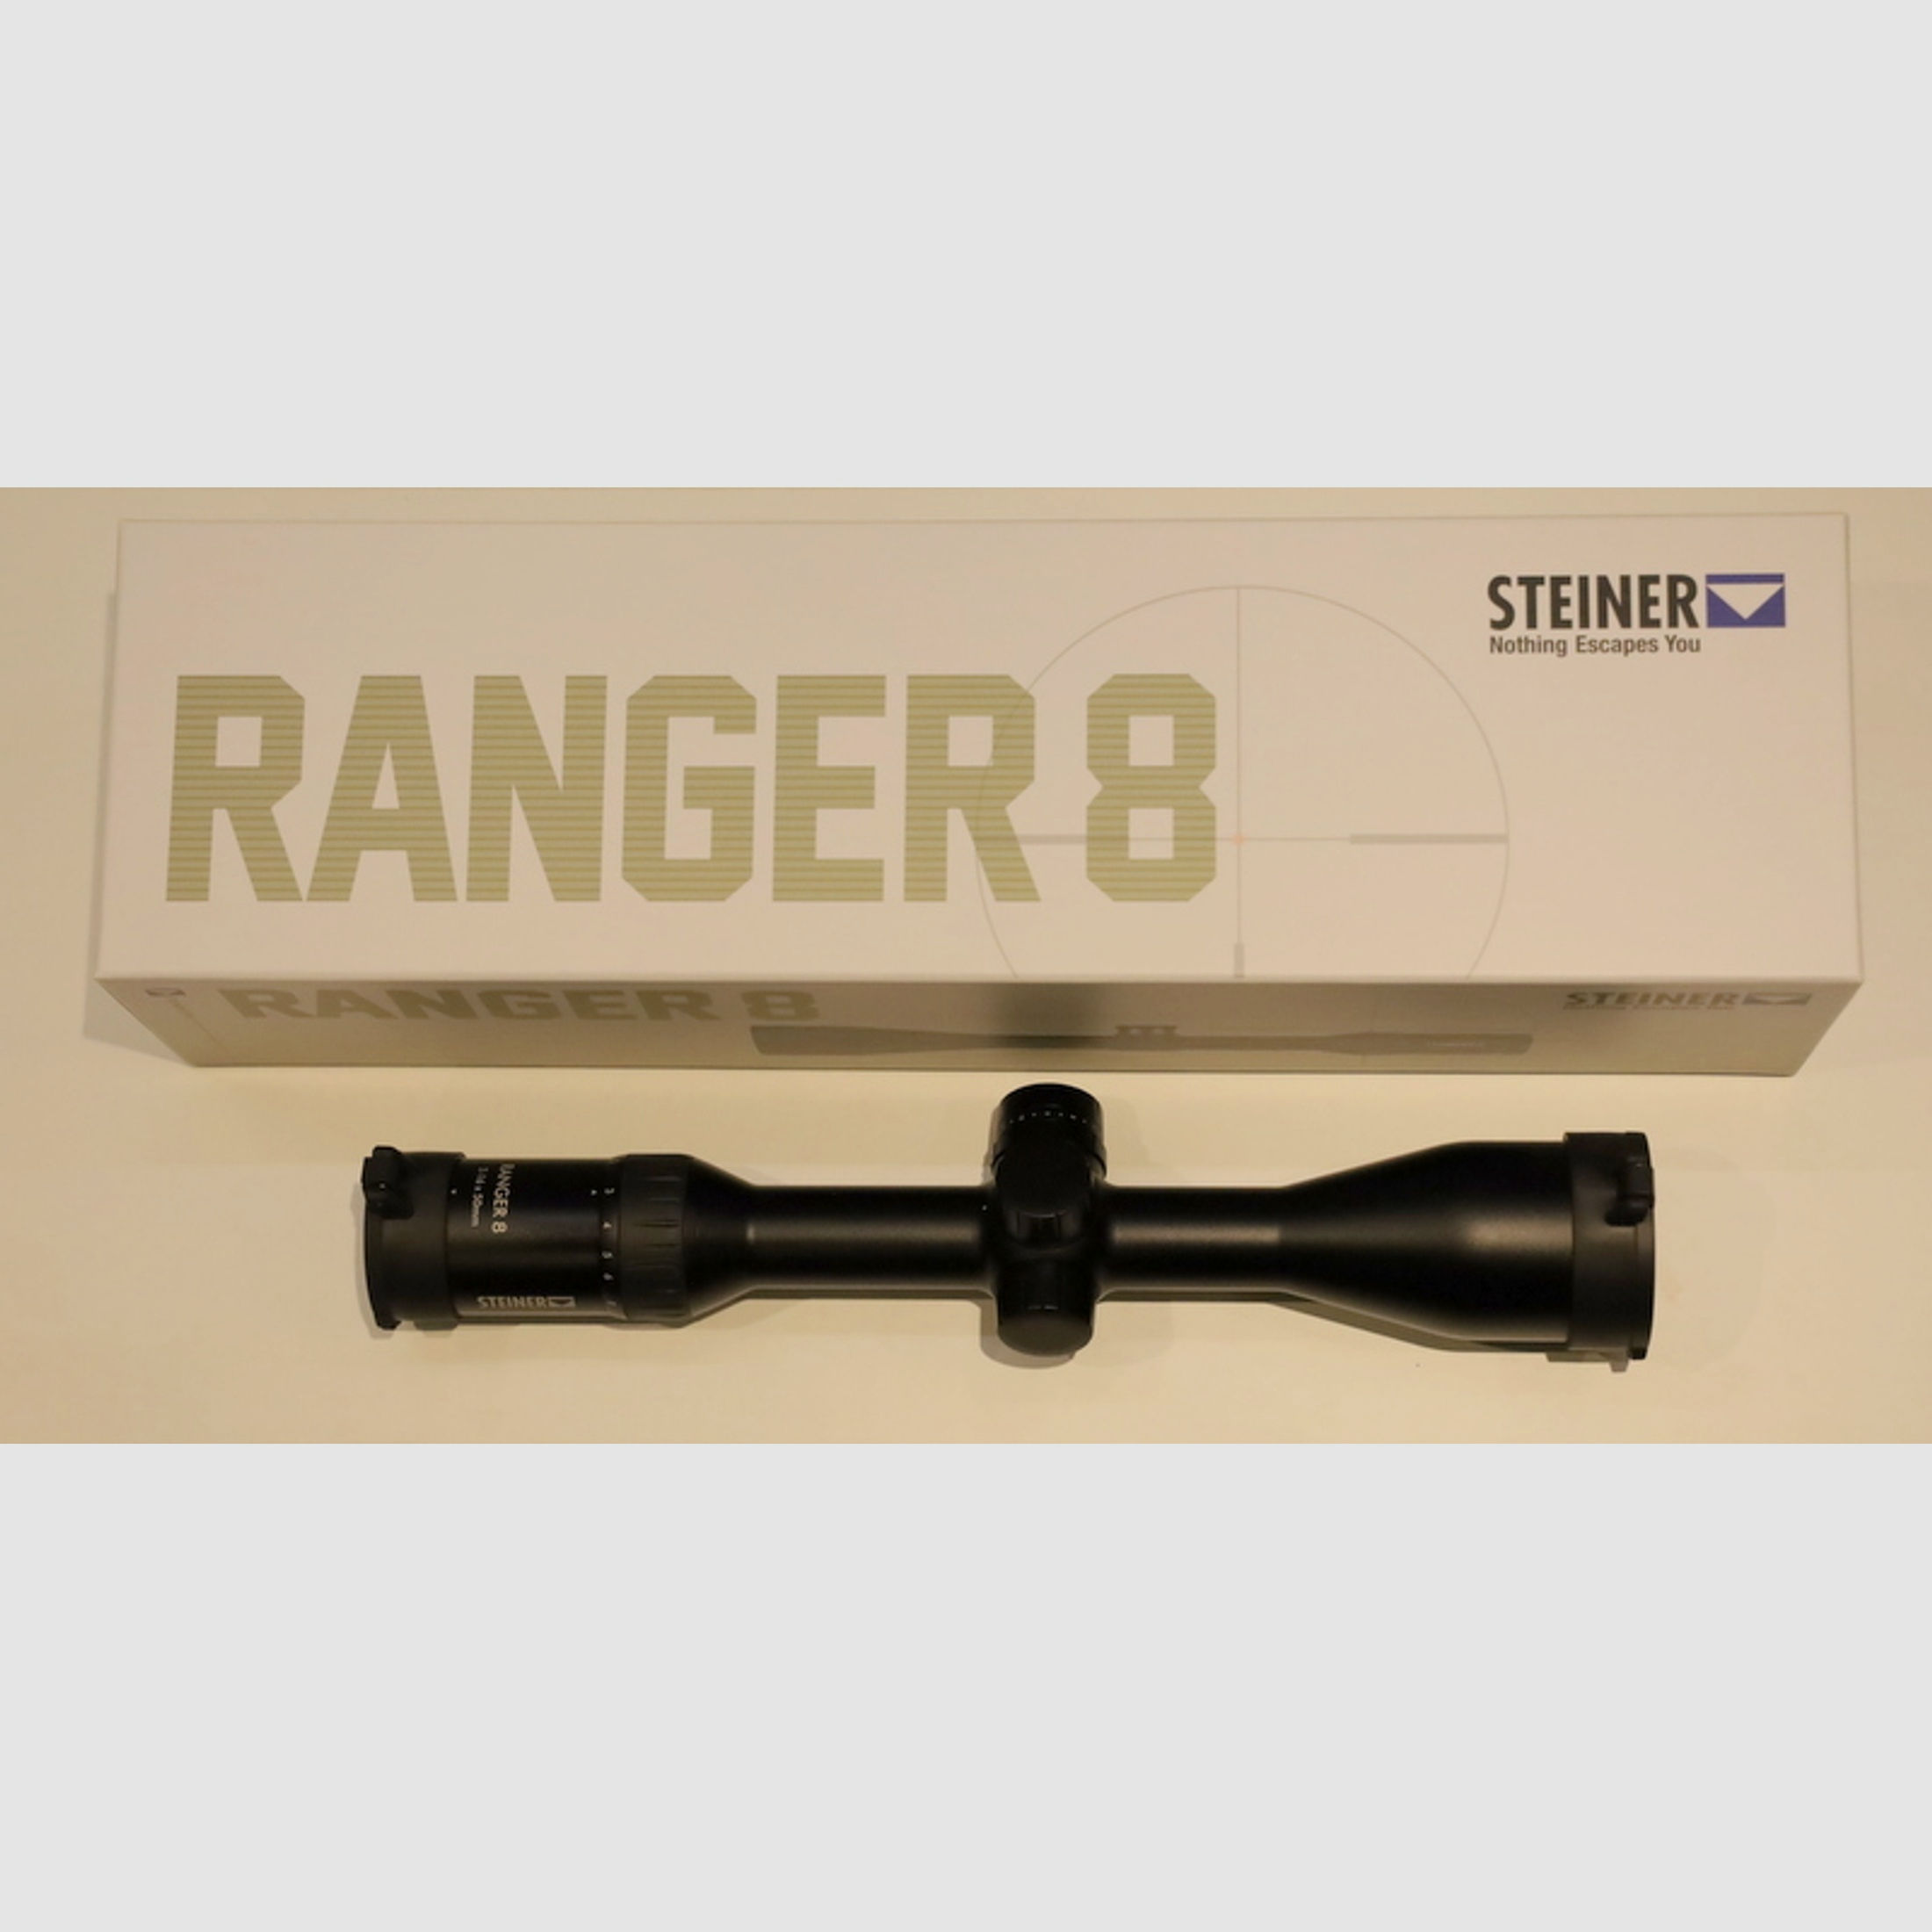 ab 72,53 EUR / Monat --Steiner Ranger 8 2-16x50 Absehen LA 4A *0 EUR Versand*ab 0% Finanzierung*